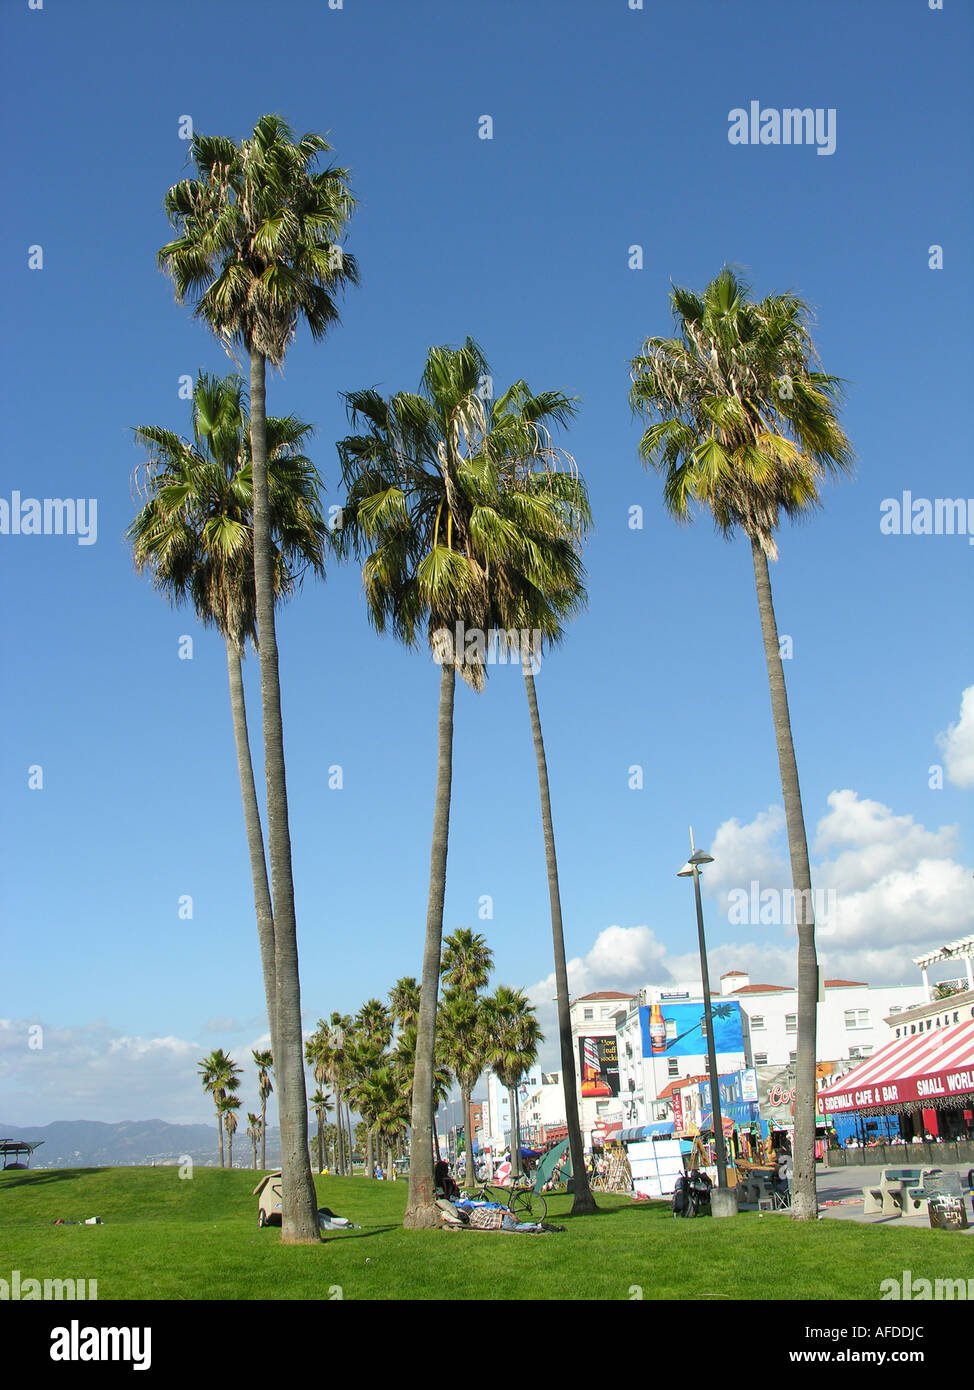 La spiaggia di Venice, California, Stati Uniti d'America Foto Stock